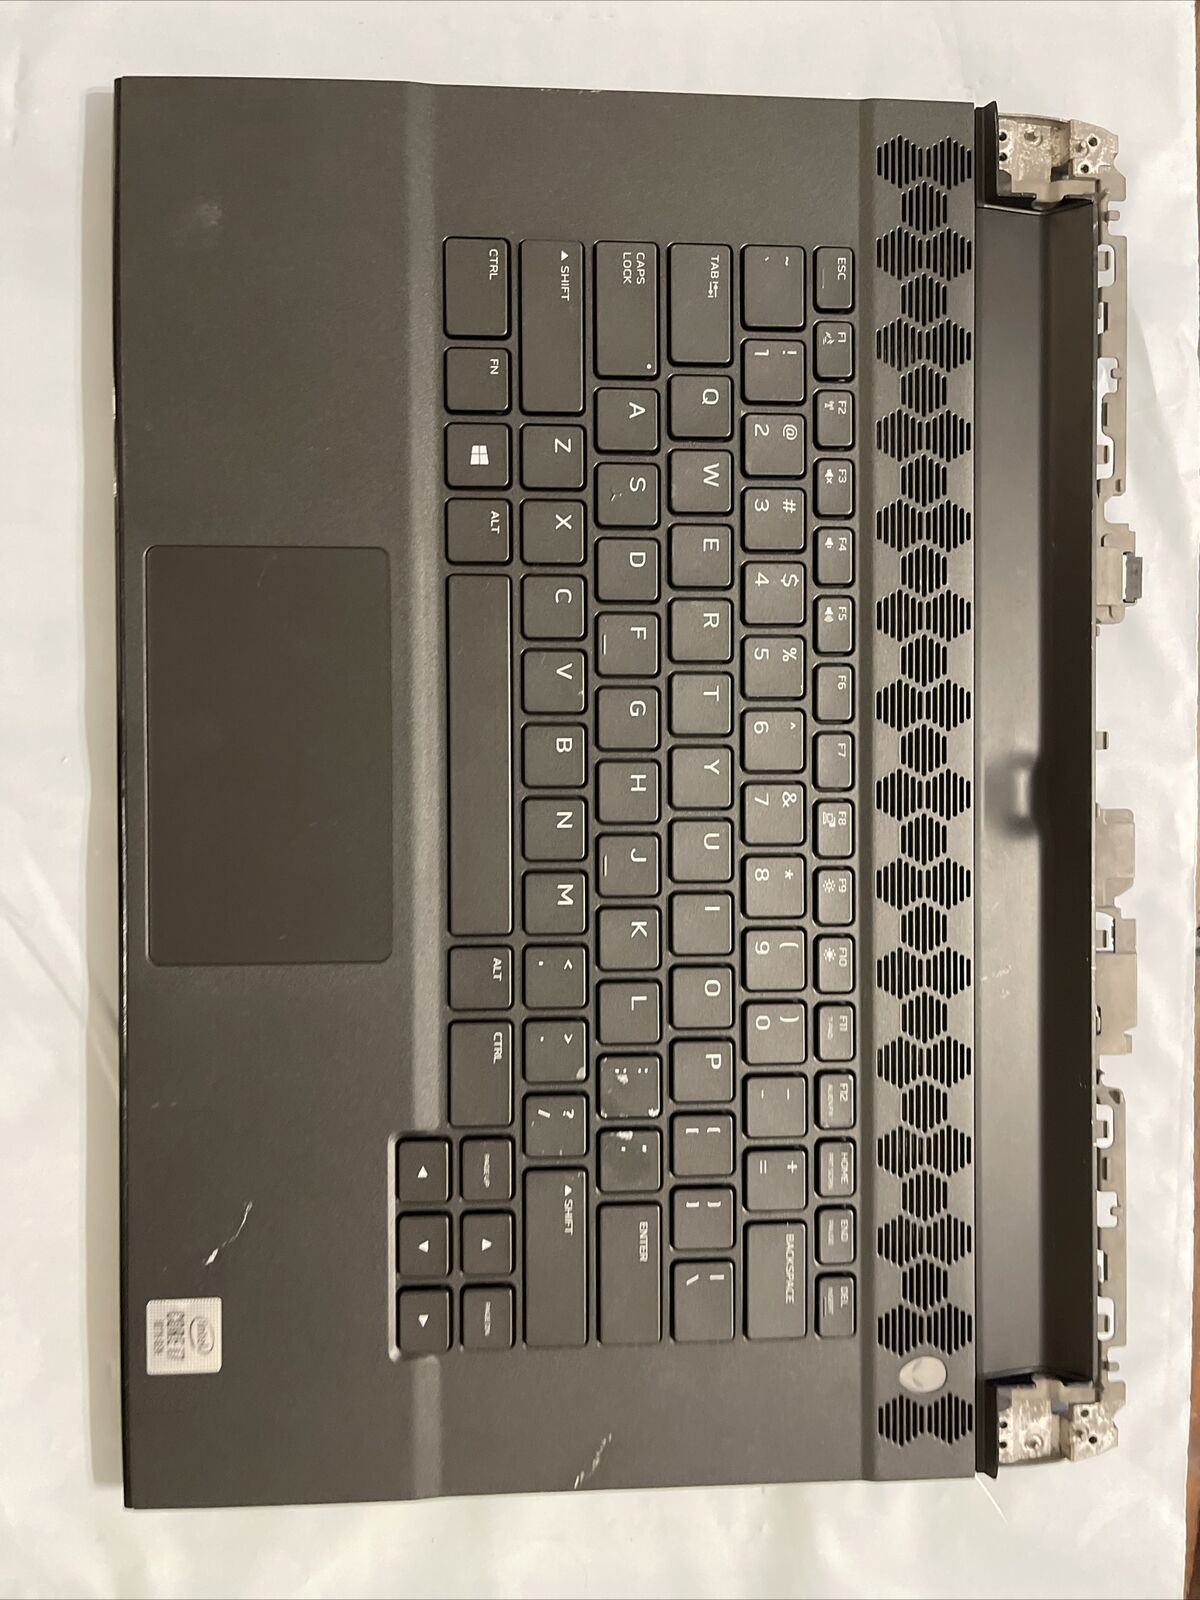 Dell Palmrest Keyboard Alienware15 M15 R3 Speakers/ extras 3DYGJ 03DYGJ H1 P8